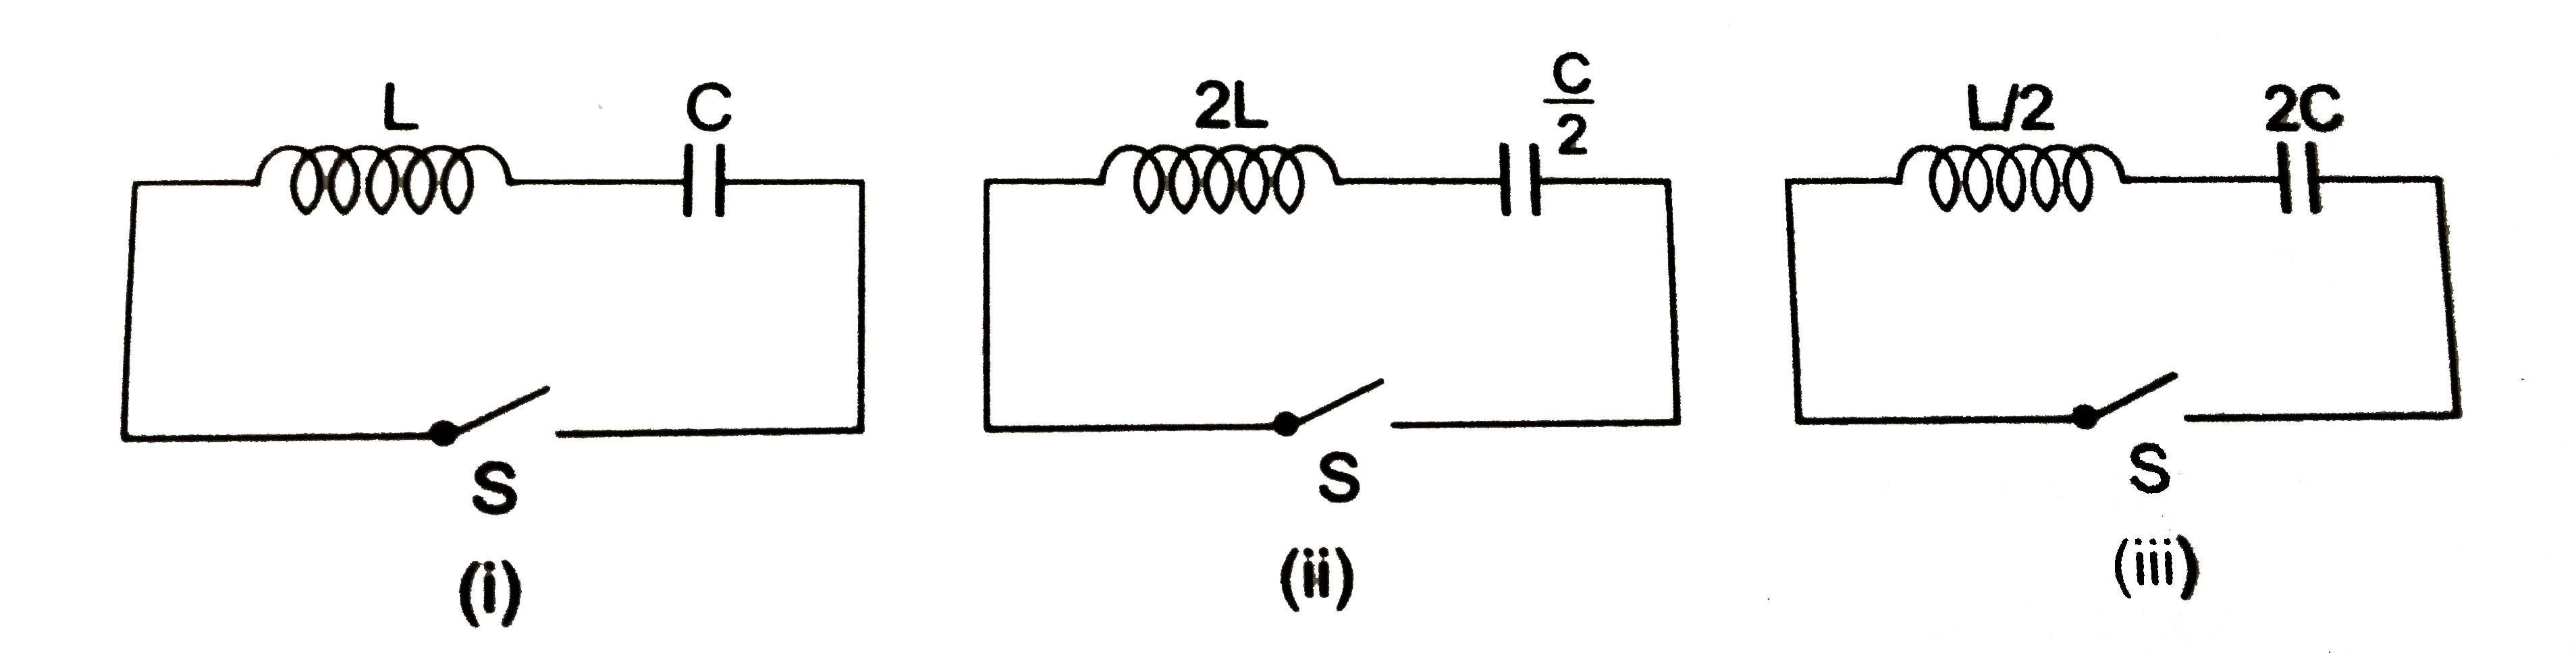 प्रदर्शित L -C के तीन सन्तजनों में संधारित्रों को समान विभवांतर V तक आवेशित किया गया है तथा स्विच S को दबाकर परिपथ में विधुत दोलन उत्पन्न किया जाता है।